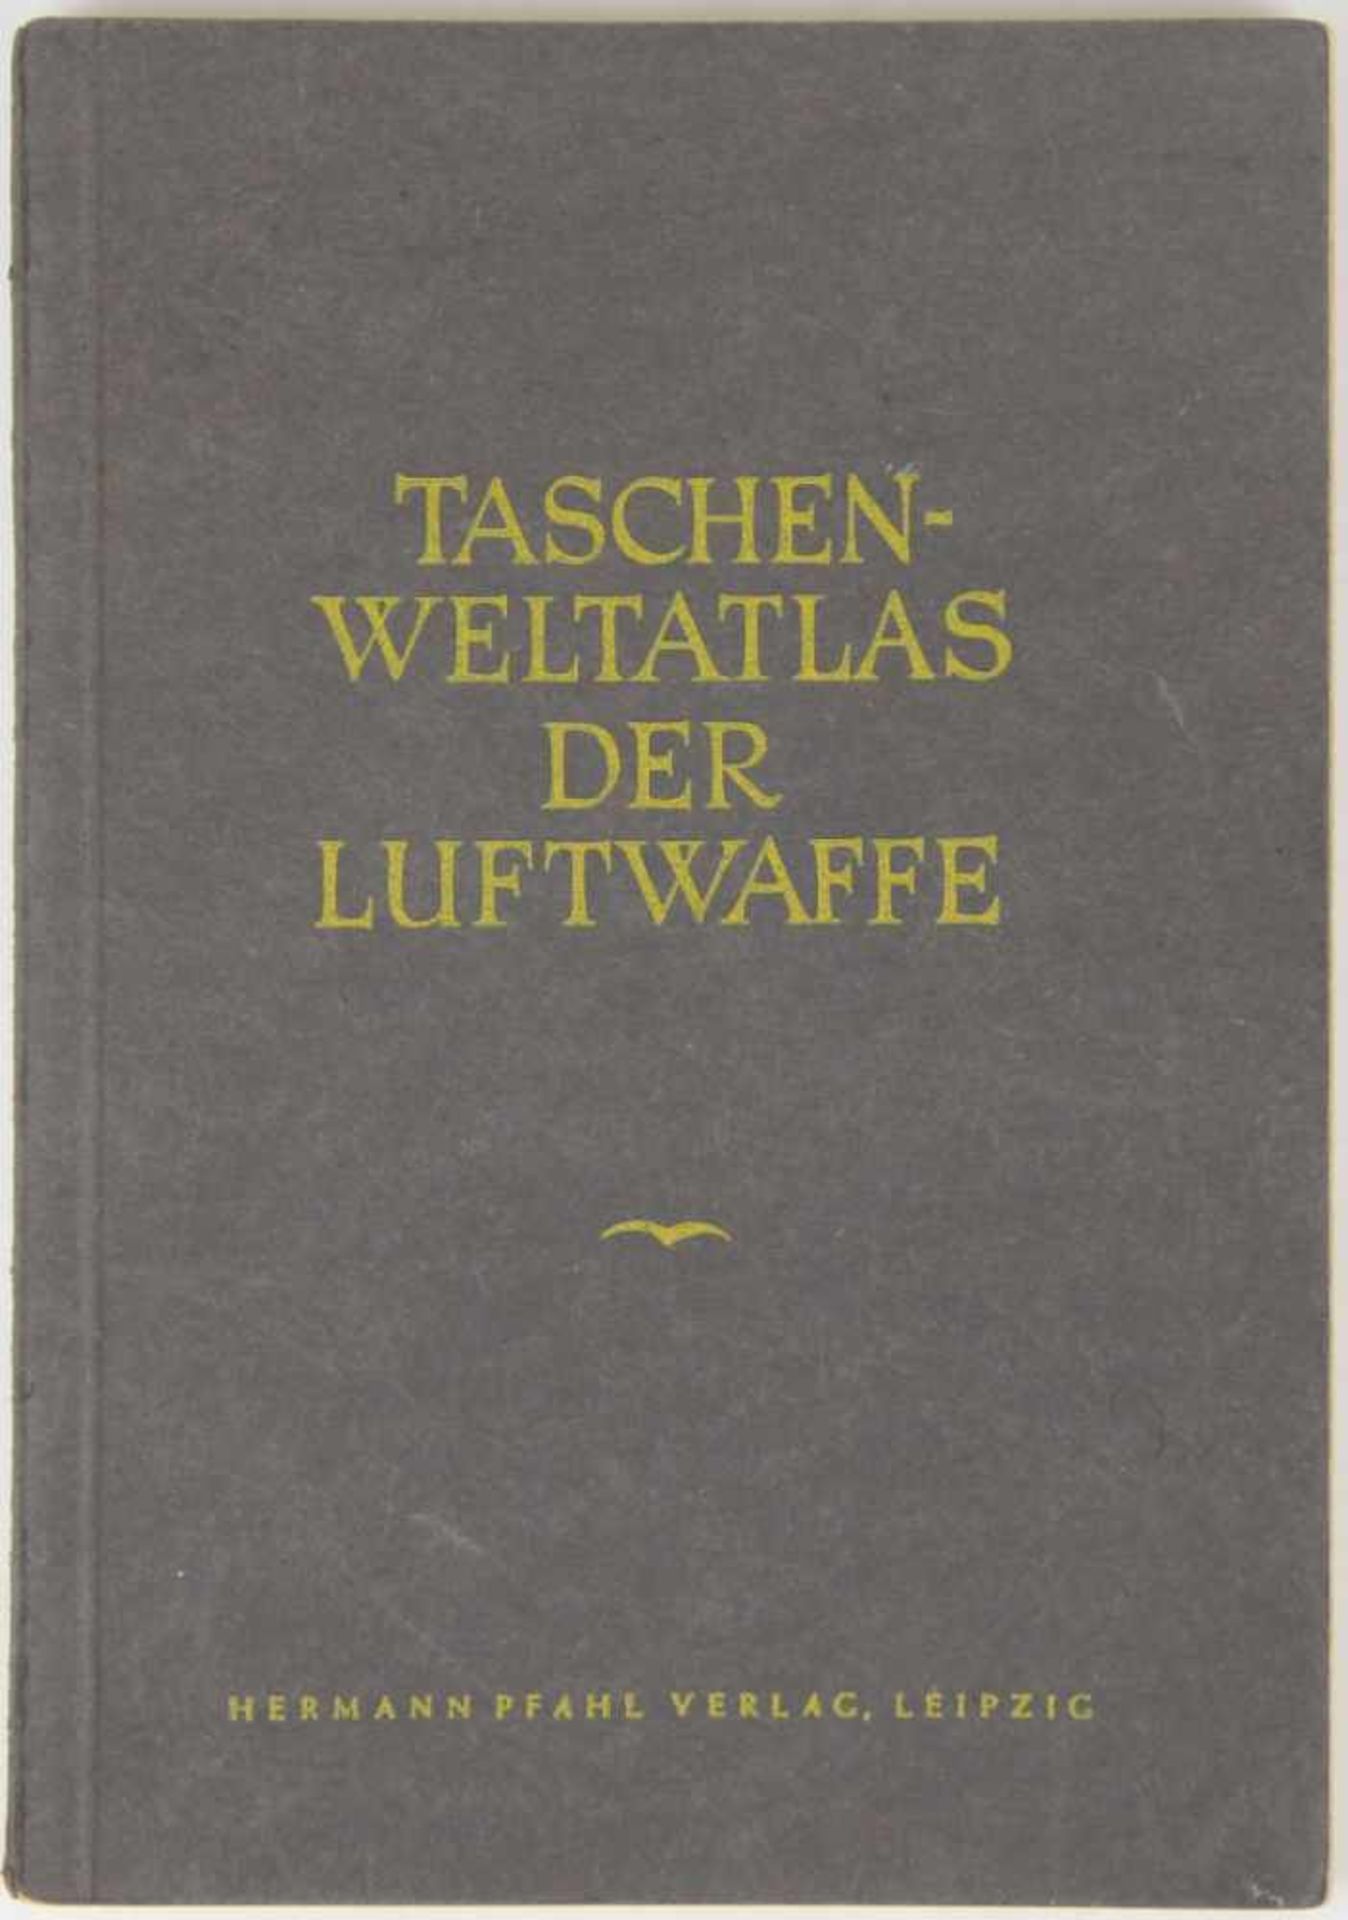 Atlanten. -Taschen-Welt-Atlas der Luftwaffe. Herausgegeben vom Luftwaffenführungsstab Ic. Leipzig,